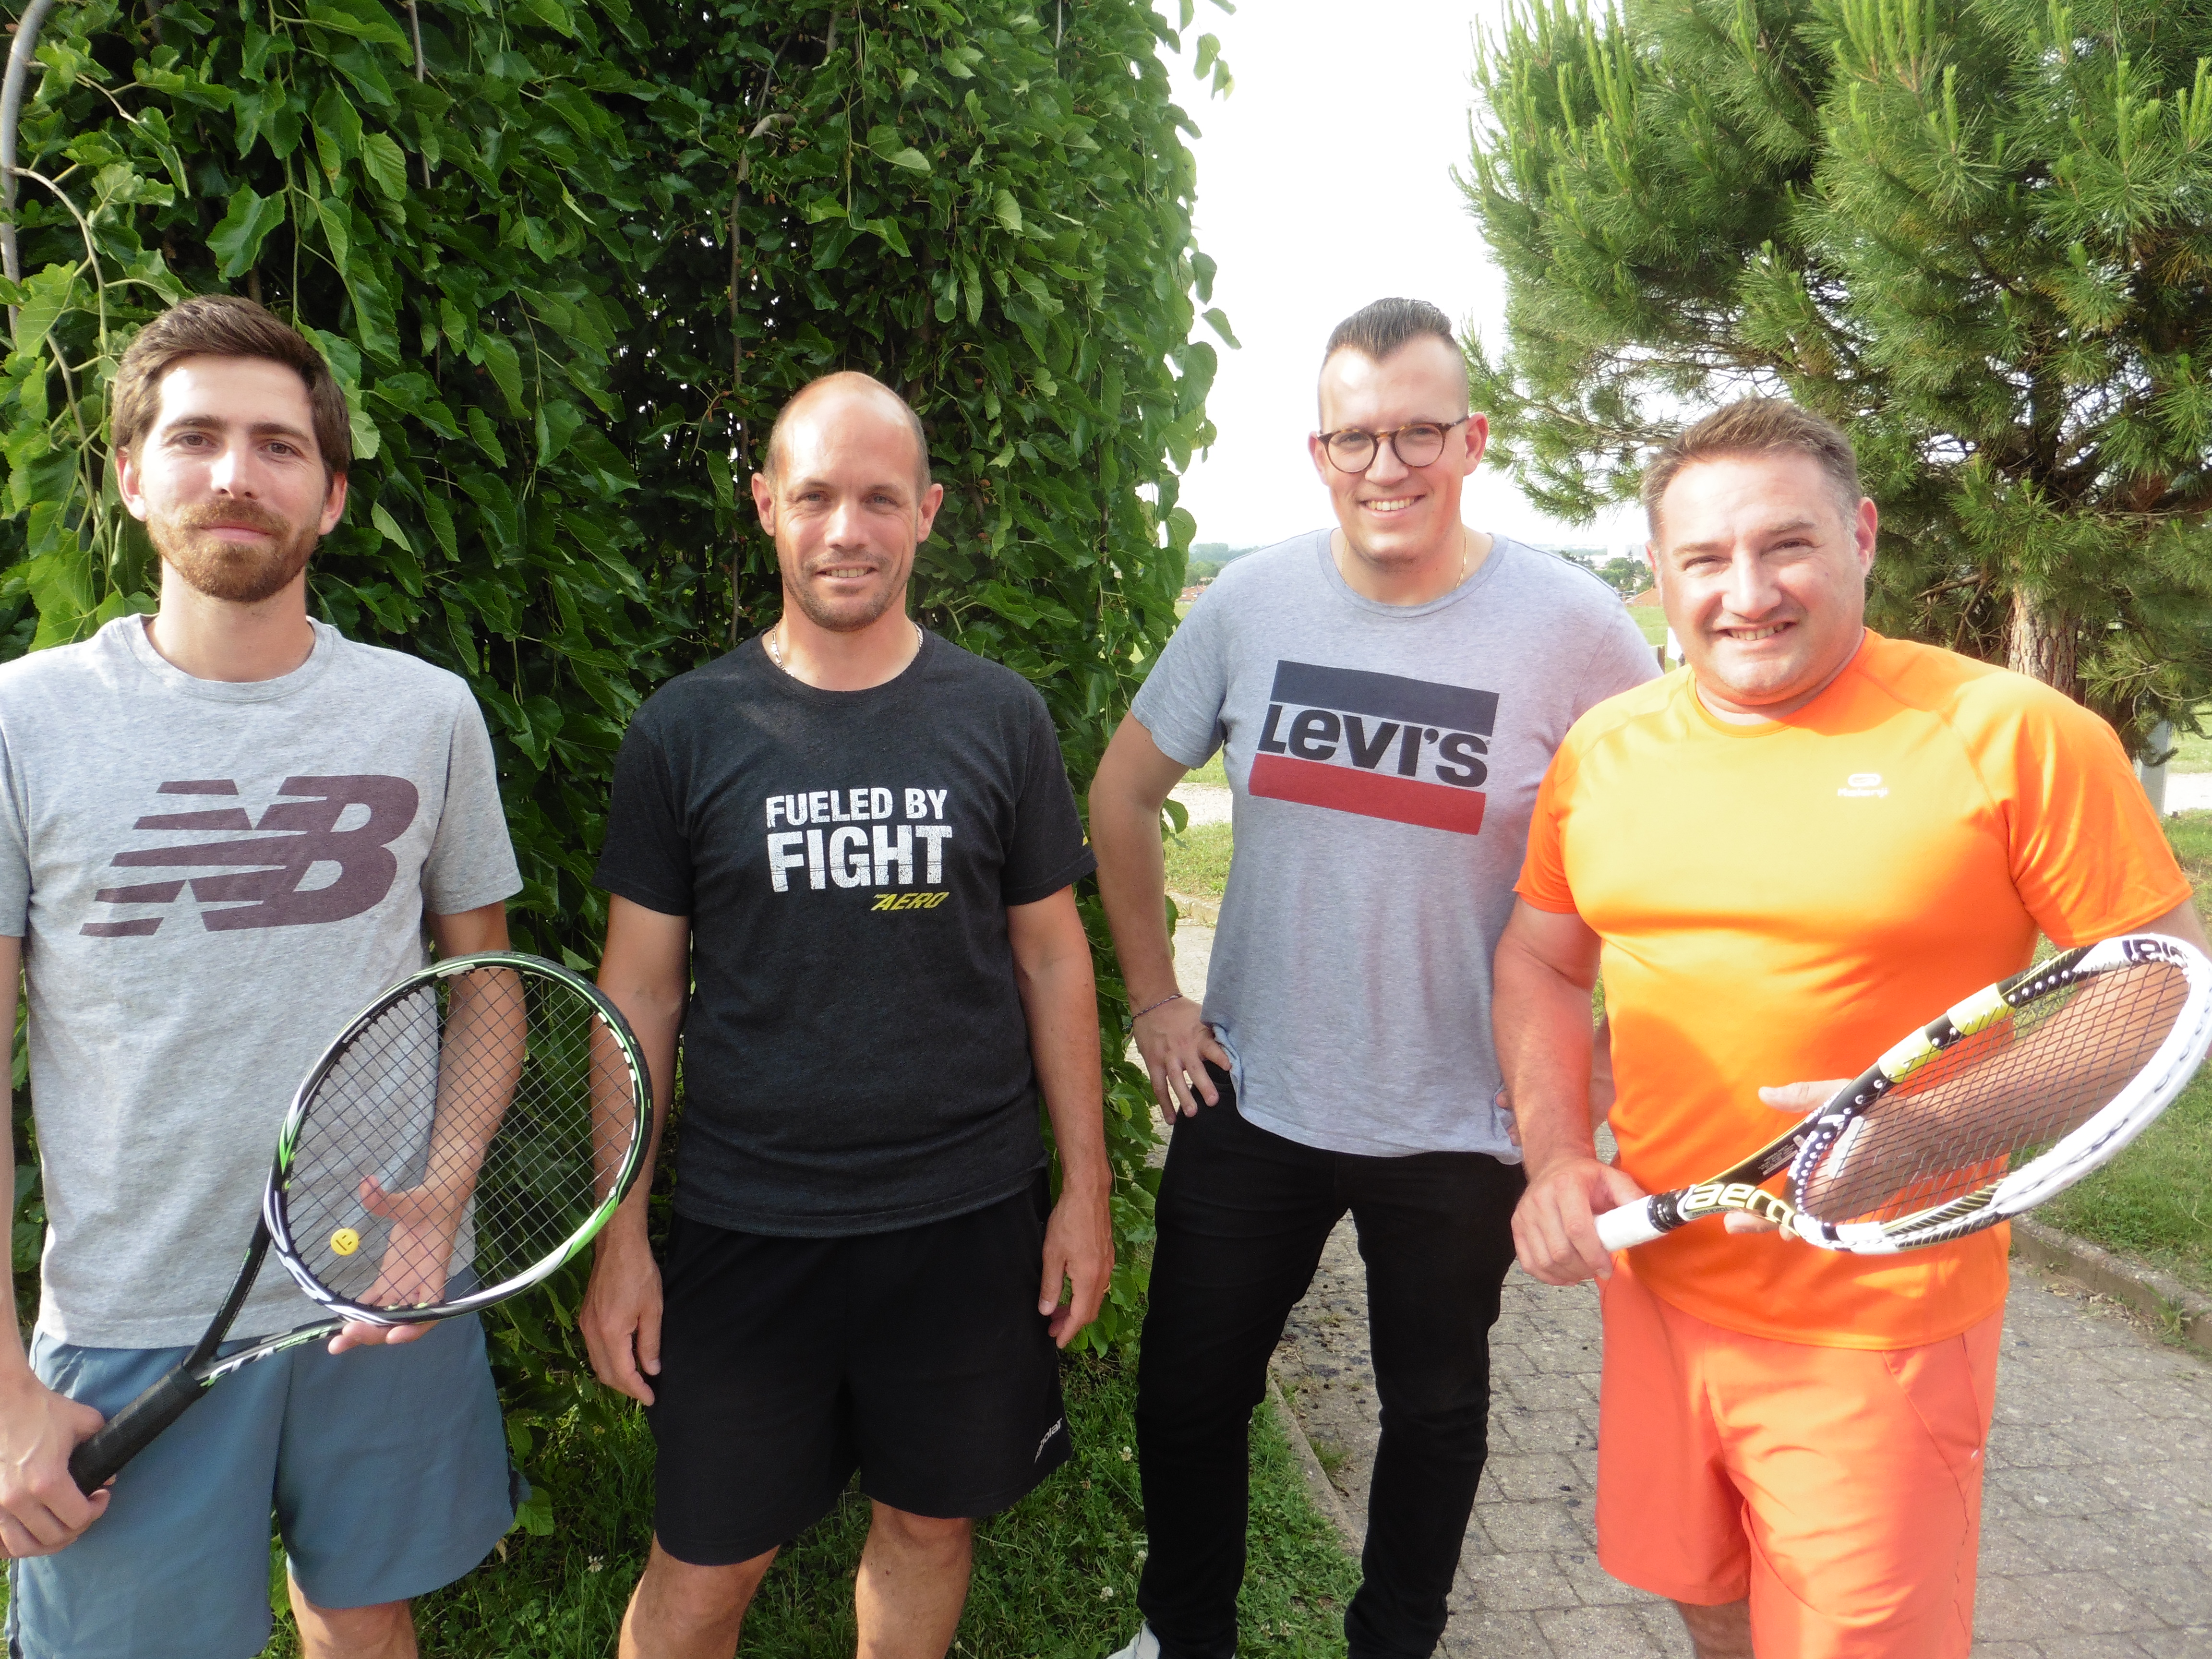 PUSIGNAN | Les résultats de mardi au tournoi de tennis seniors